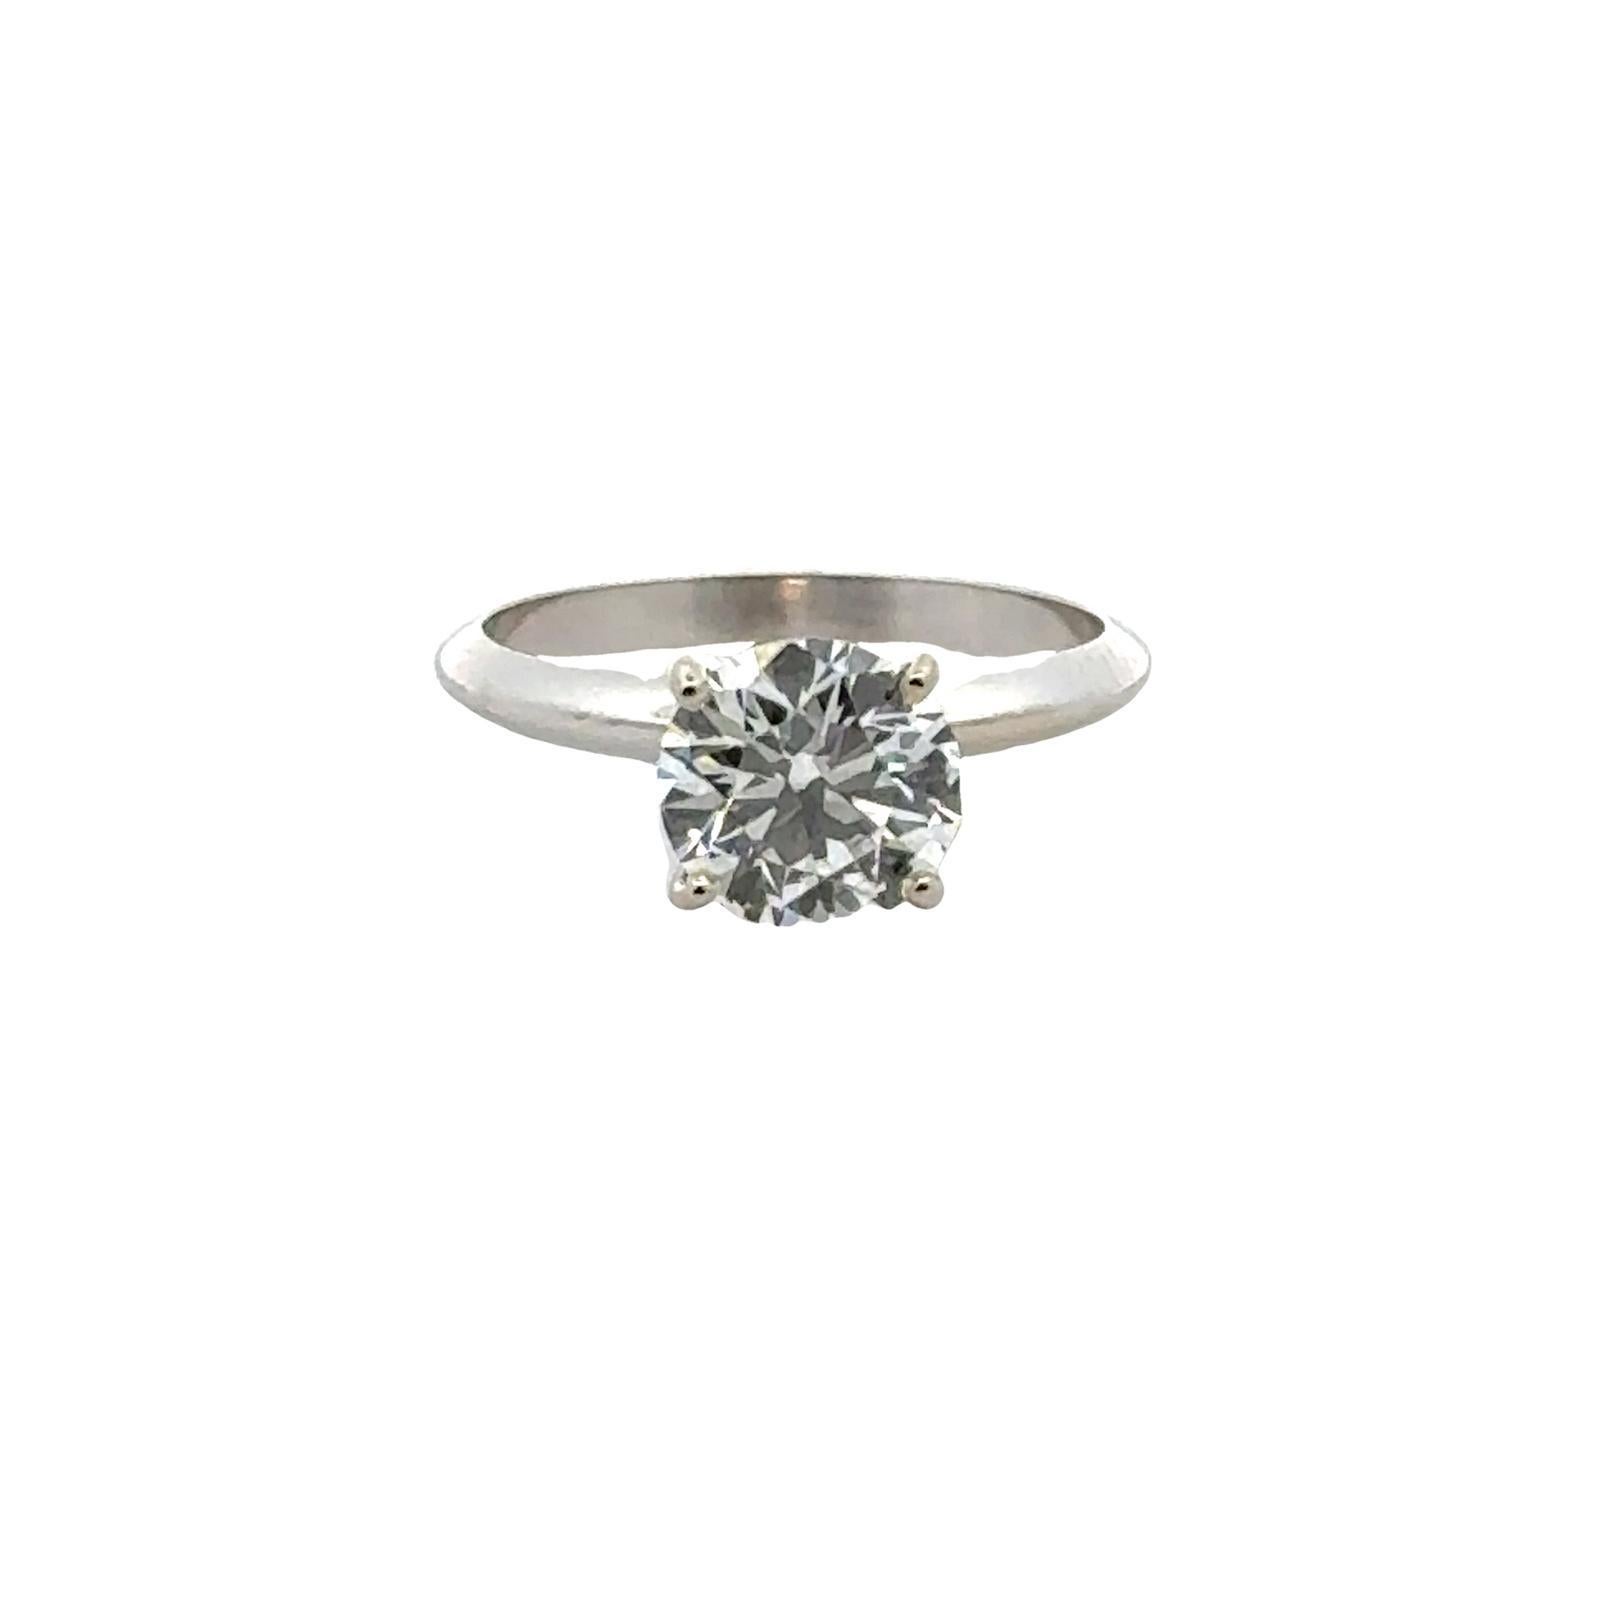 Round Cut 1.66 Carat Round Brilliant Diamond Solitaire Engagement Ring GIA Cert D/VVS2 For Sale